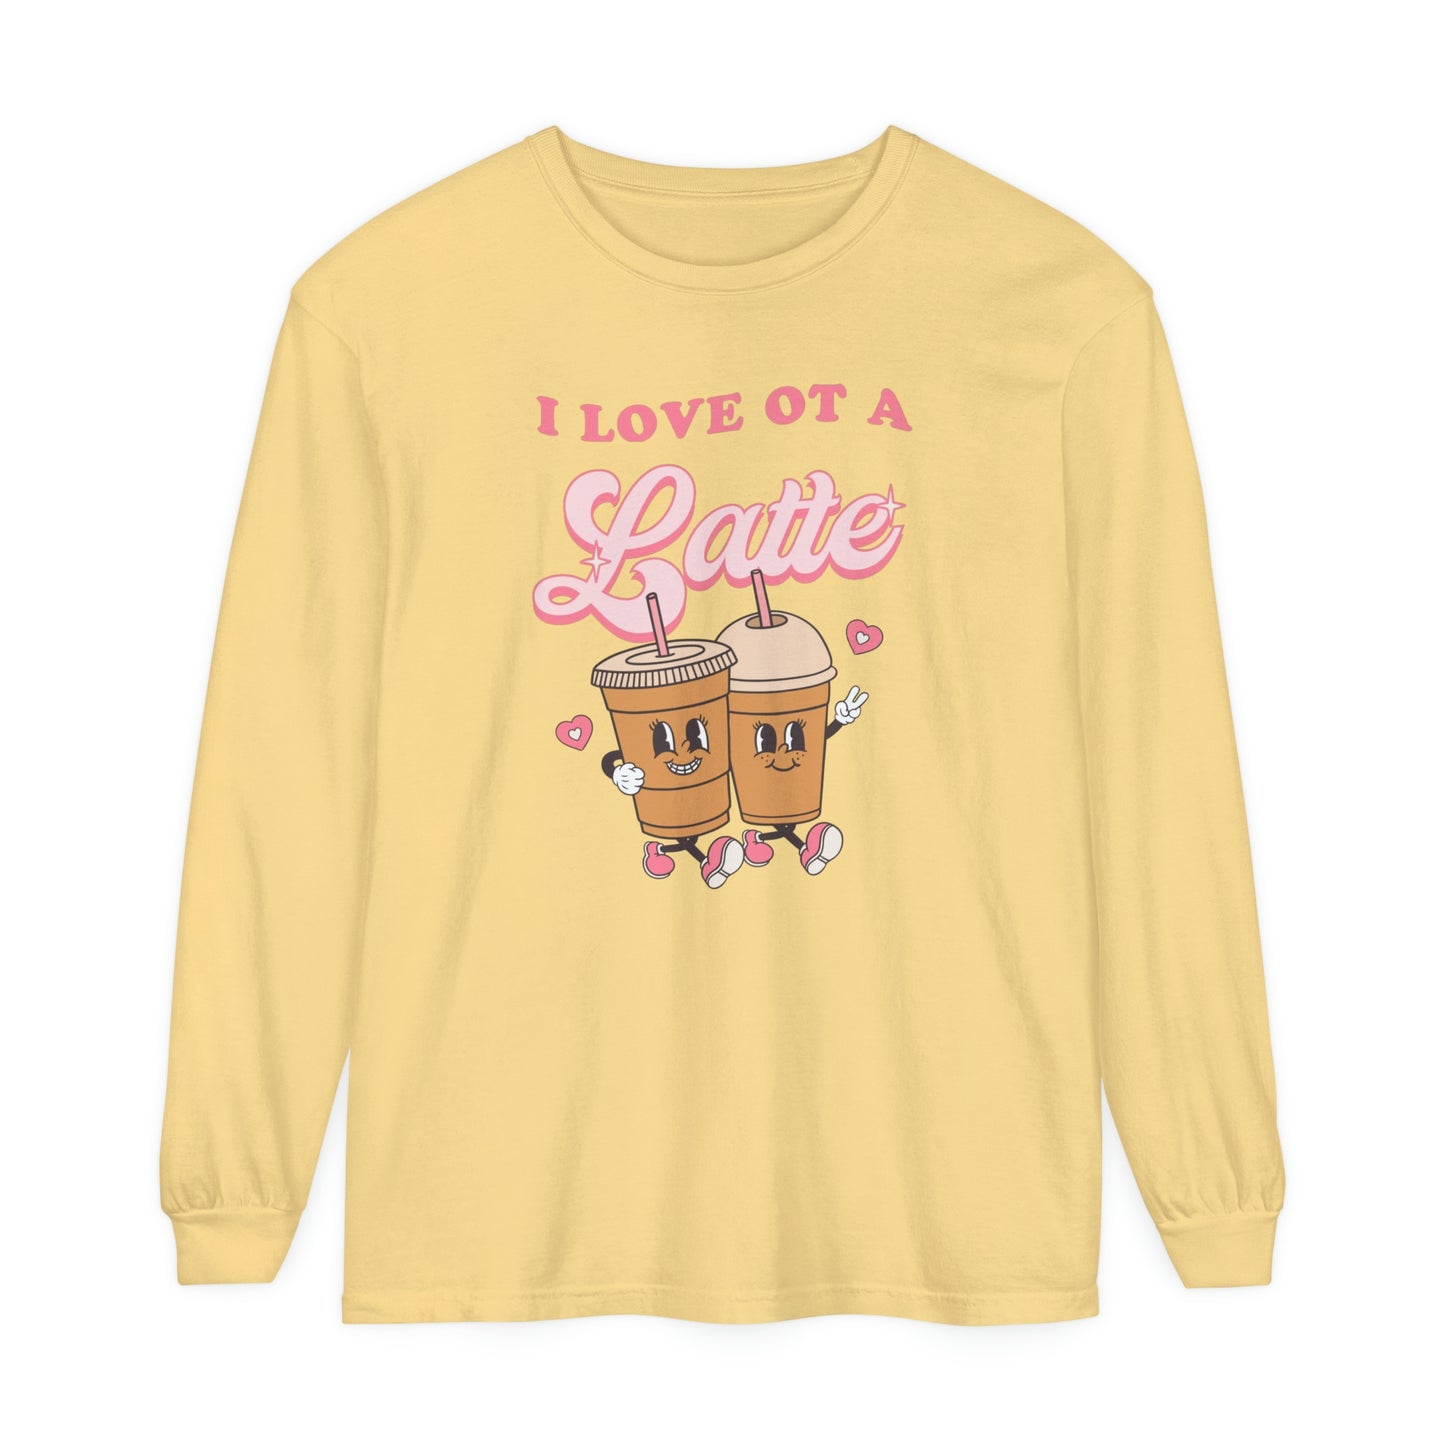 I Love OT a Latte Long Sleeve Comfort Colors T-Shirt